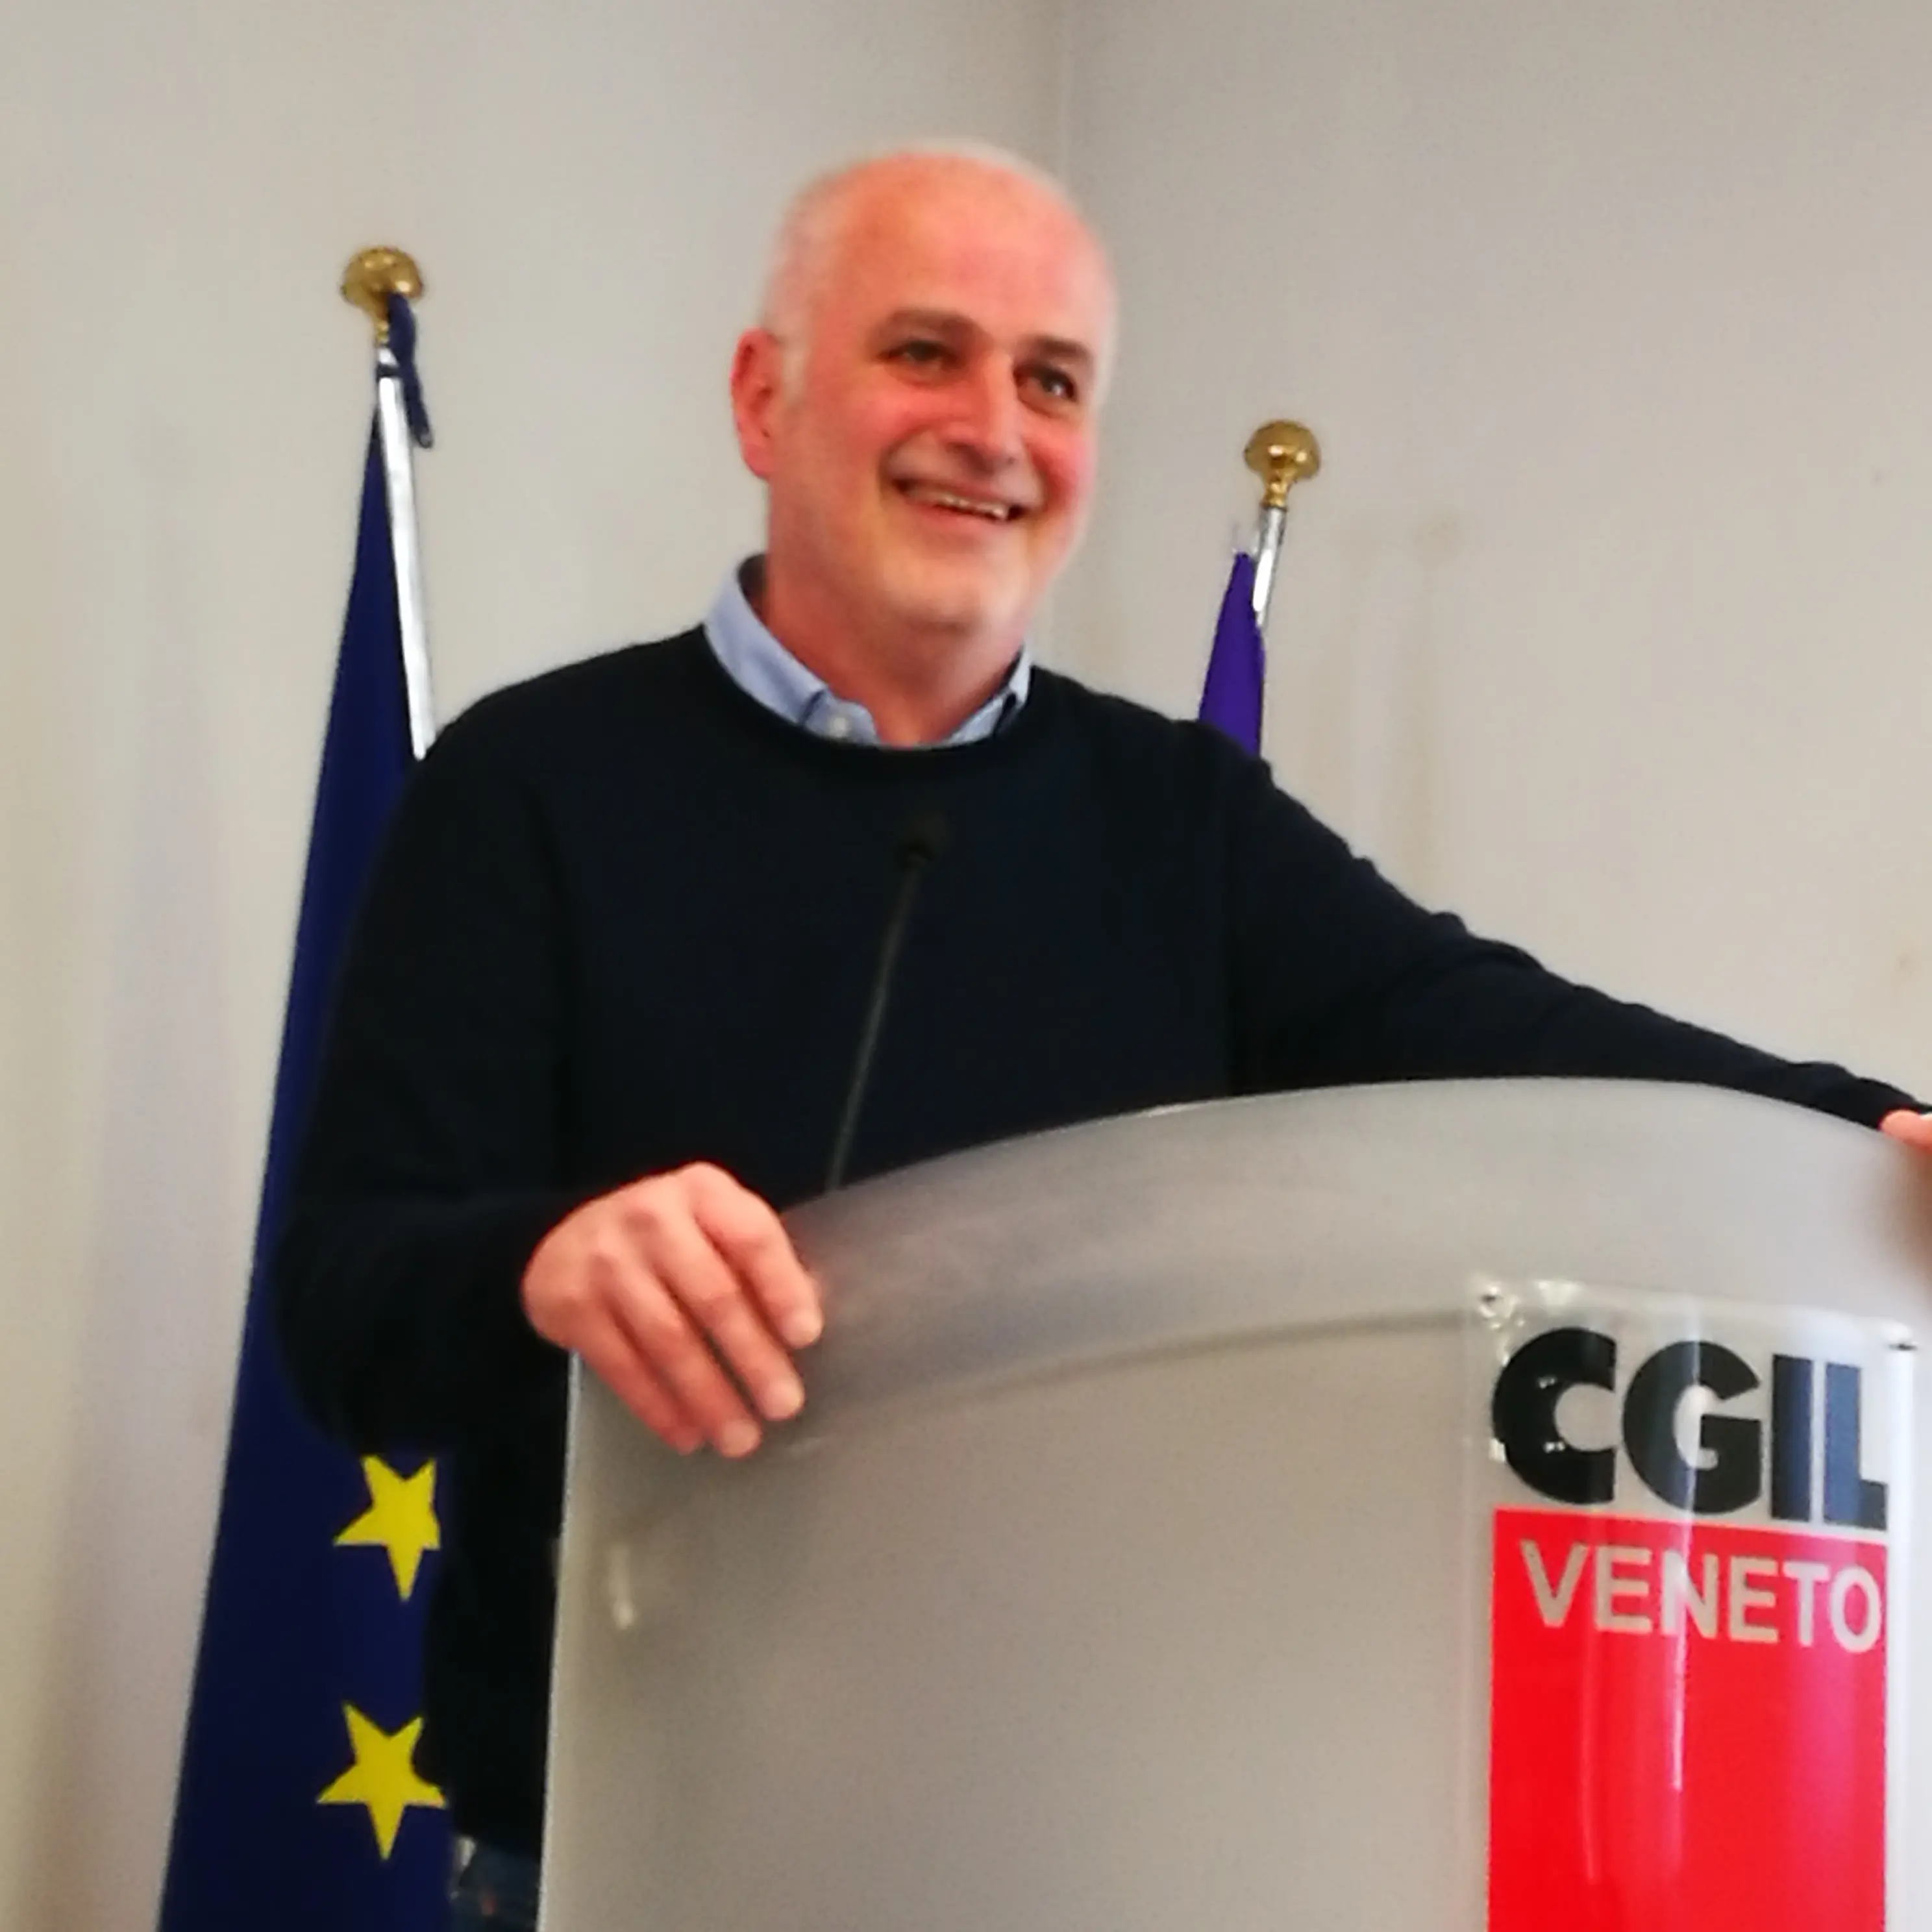 Cgil Venezia: Ugo Agiollo nuovo segretario